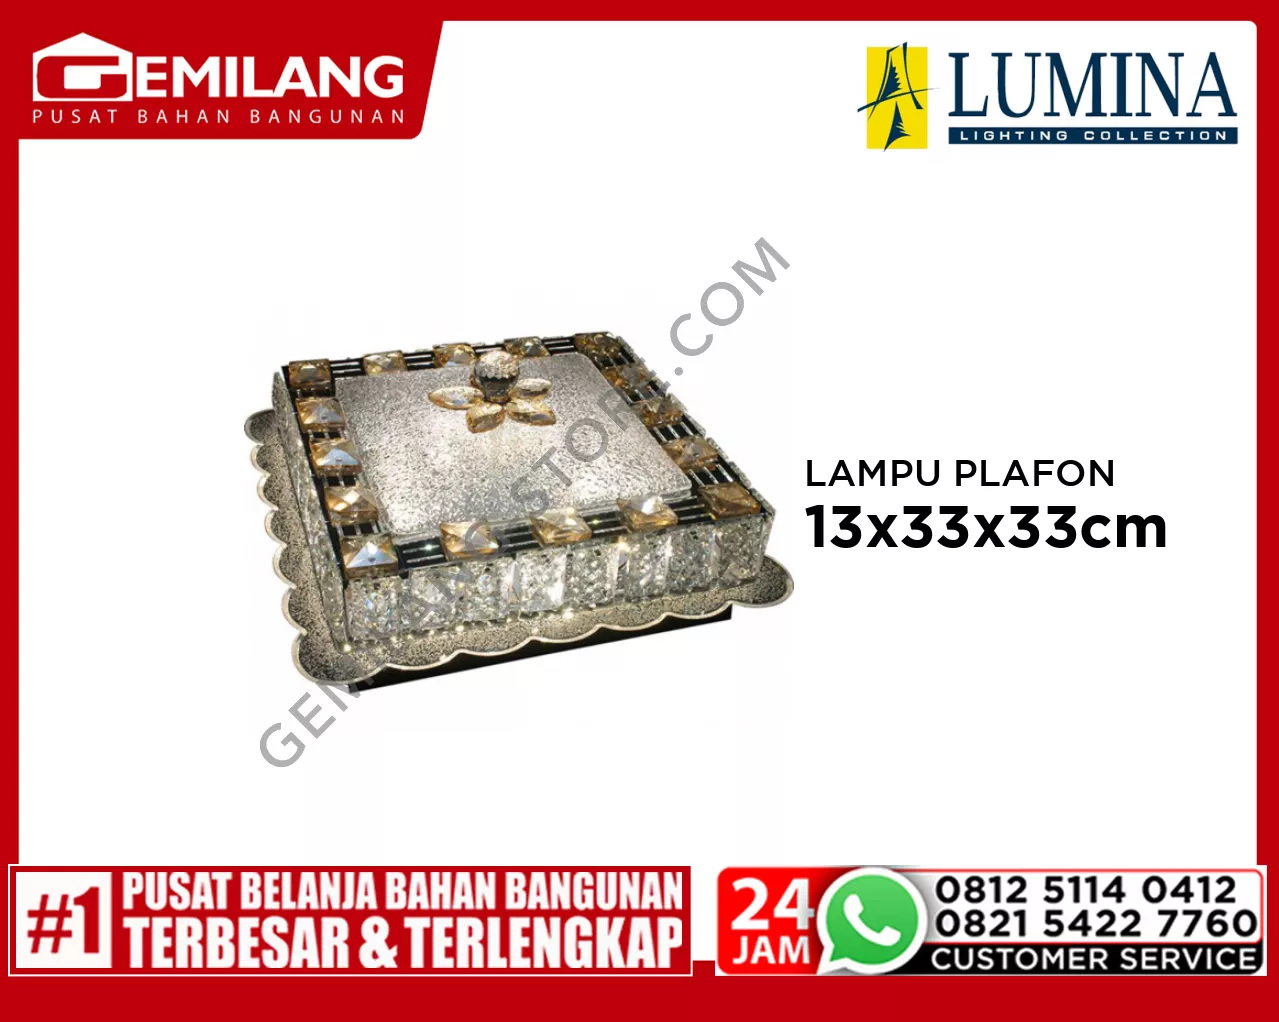 LAMPU PLAFON H 80289-300 x 300 A